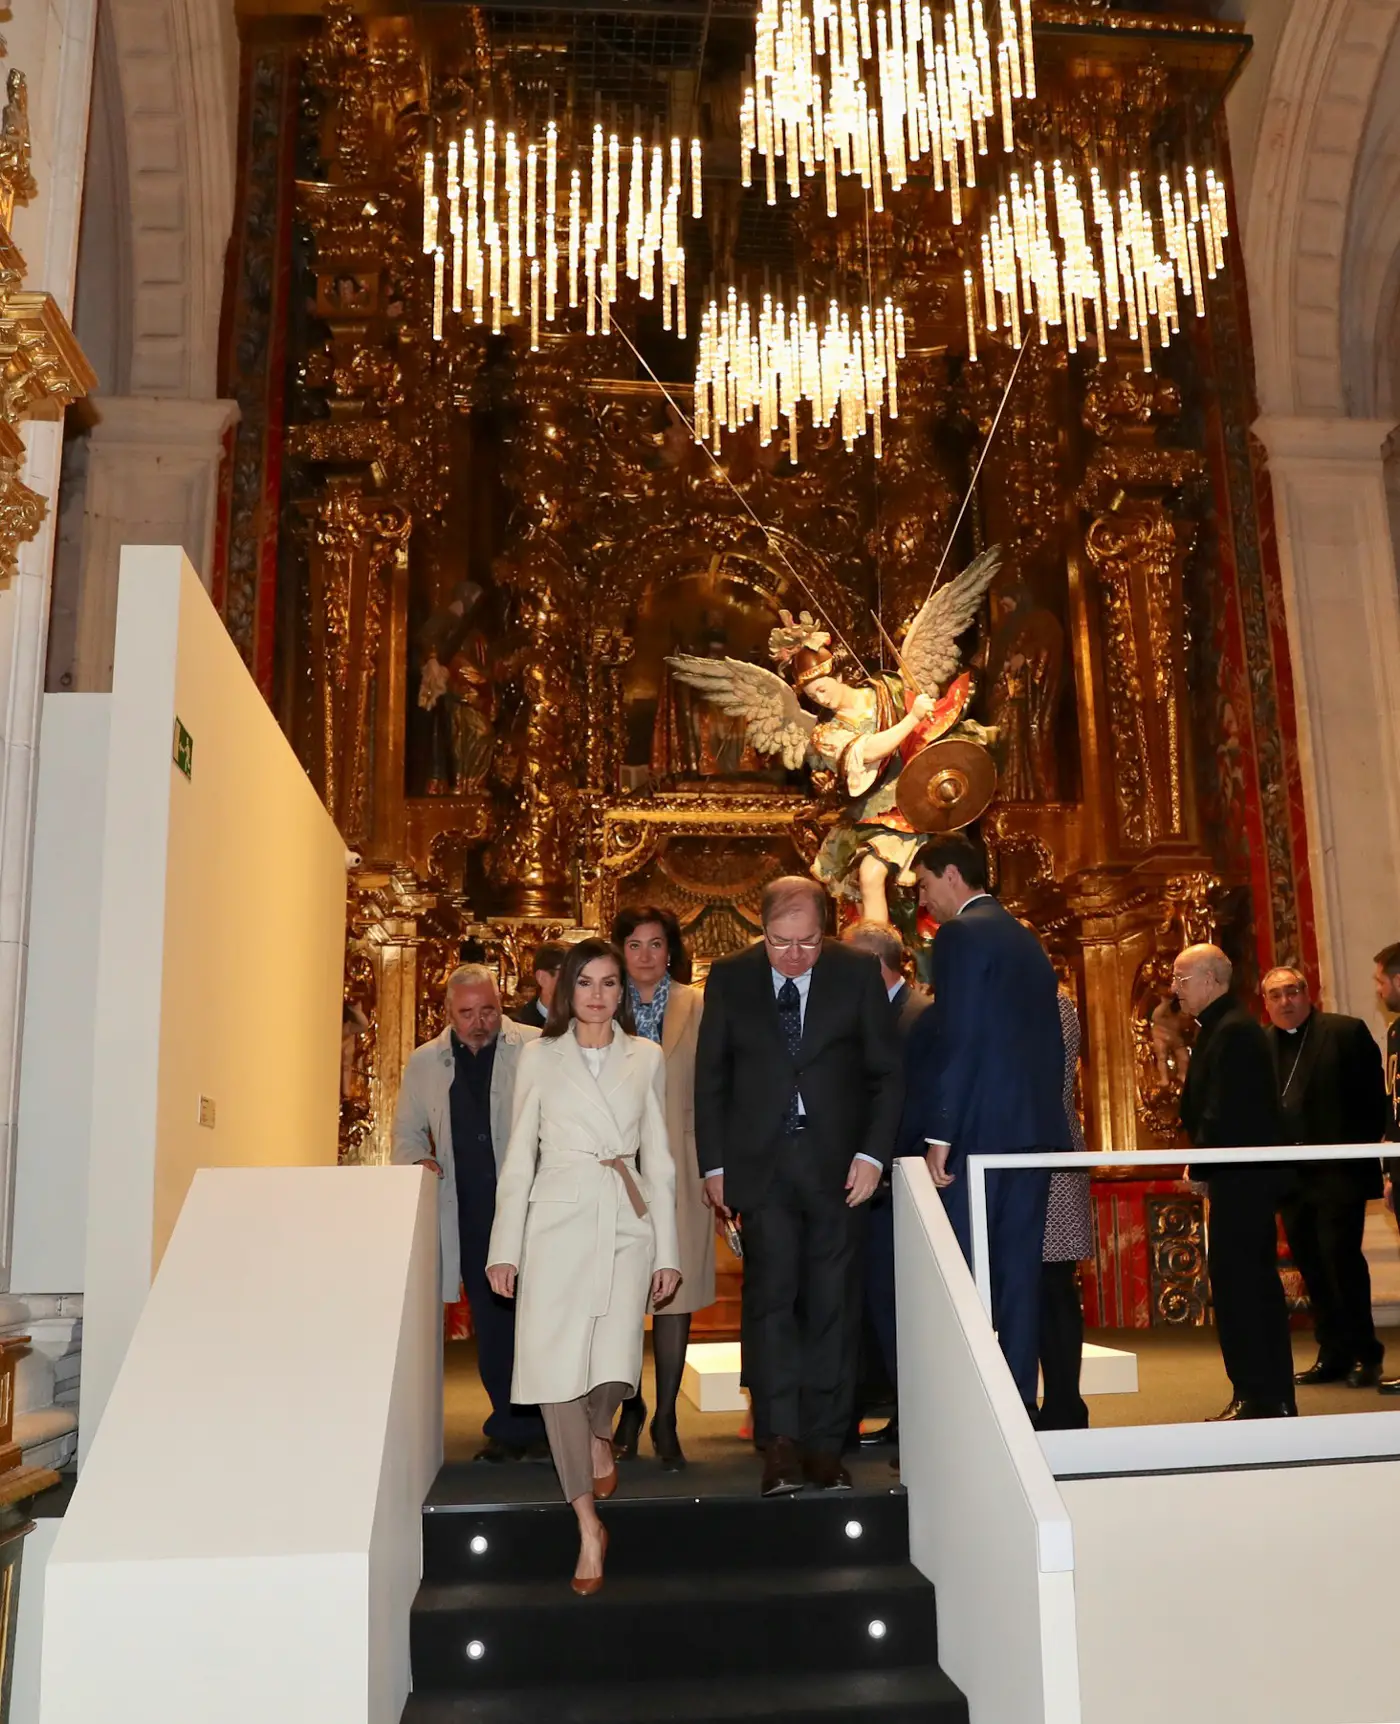 Queen Letizia visited exhibition